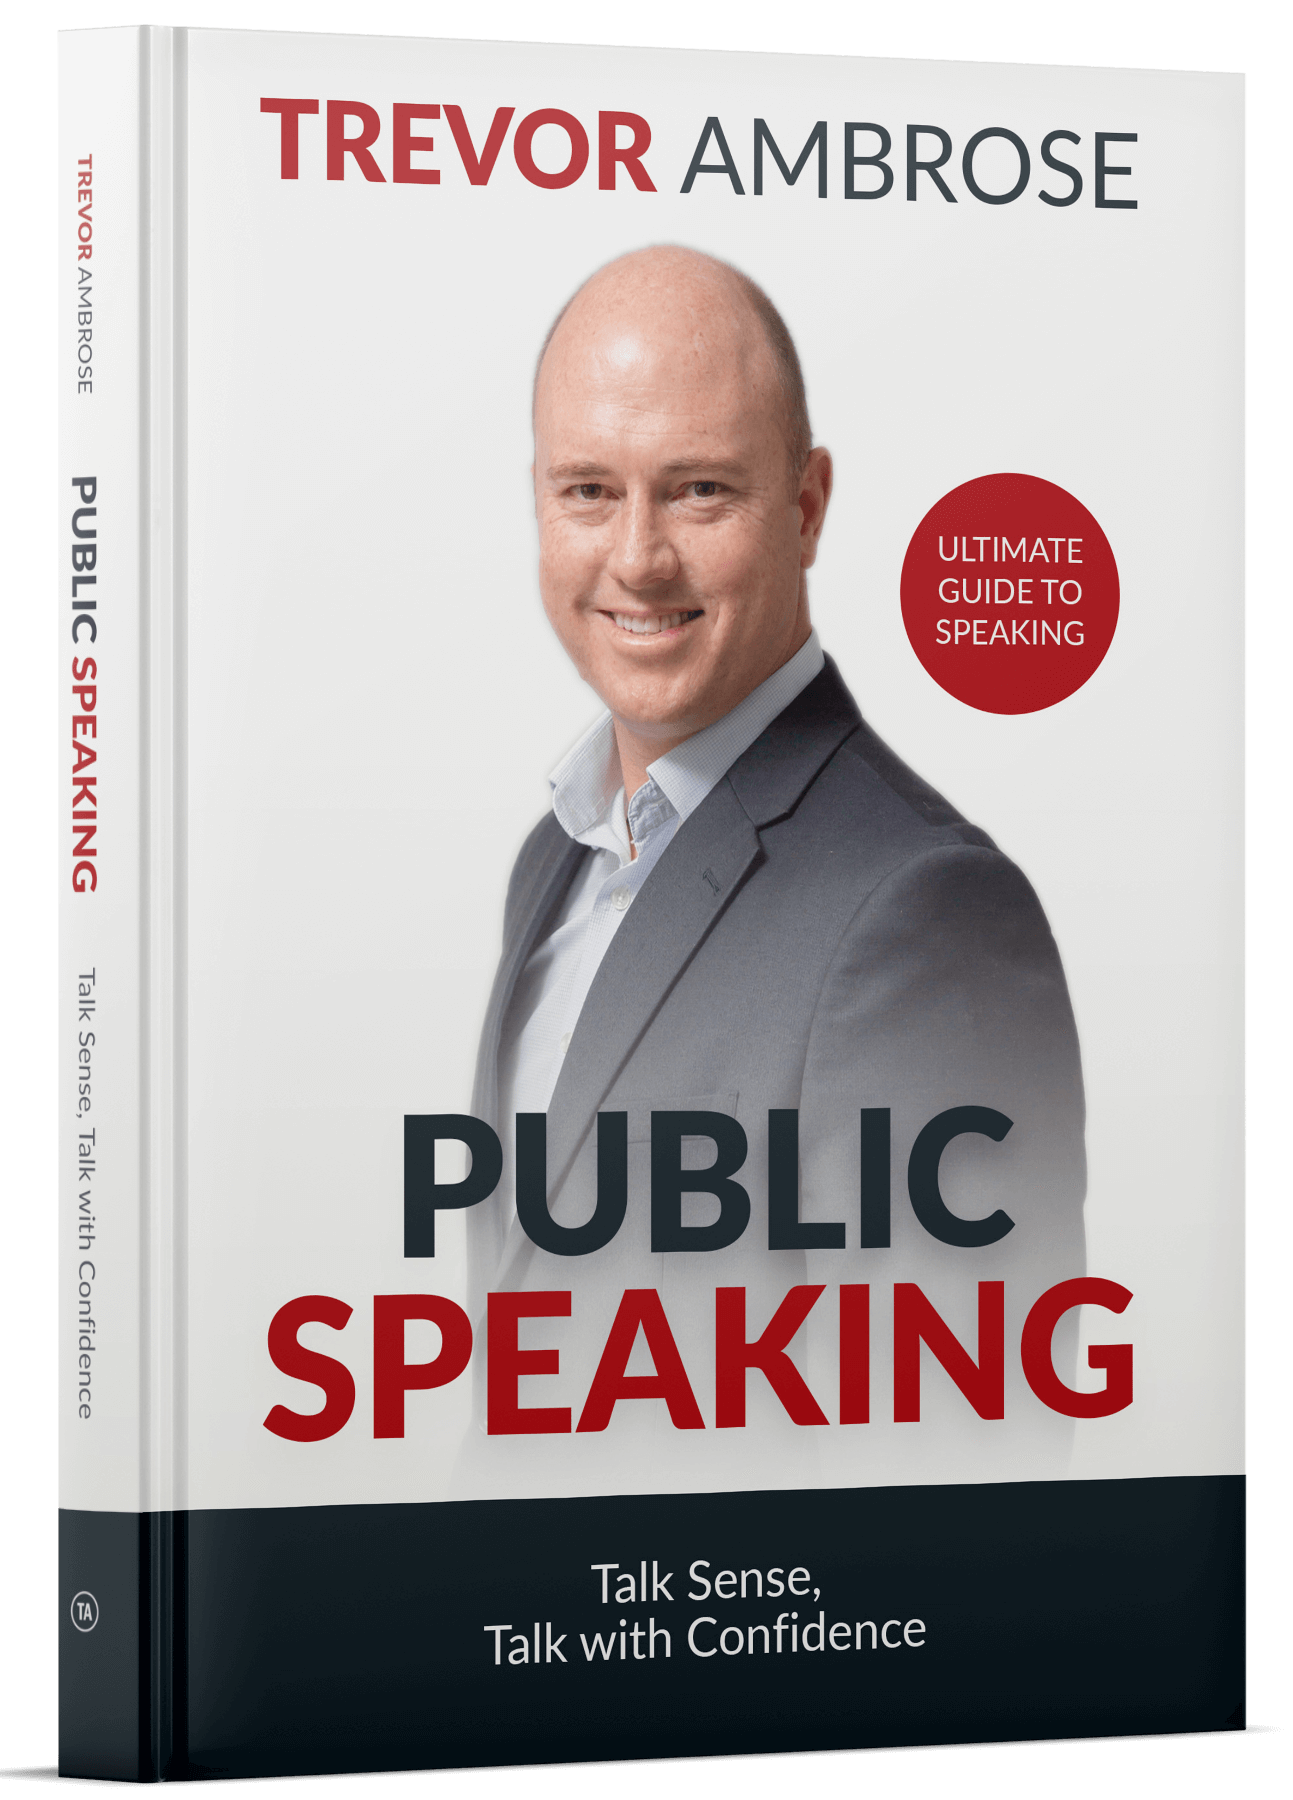 Trevor Ambrose's Public Speaking Book